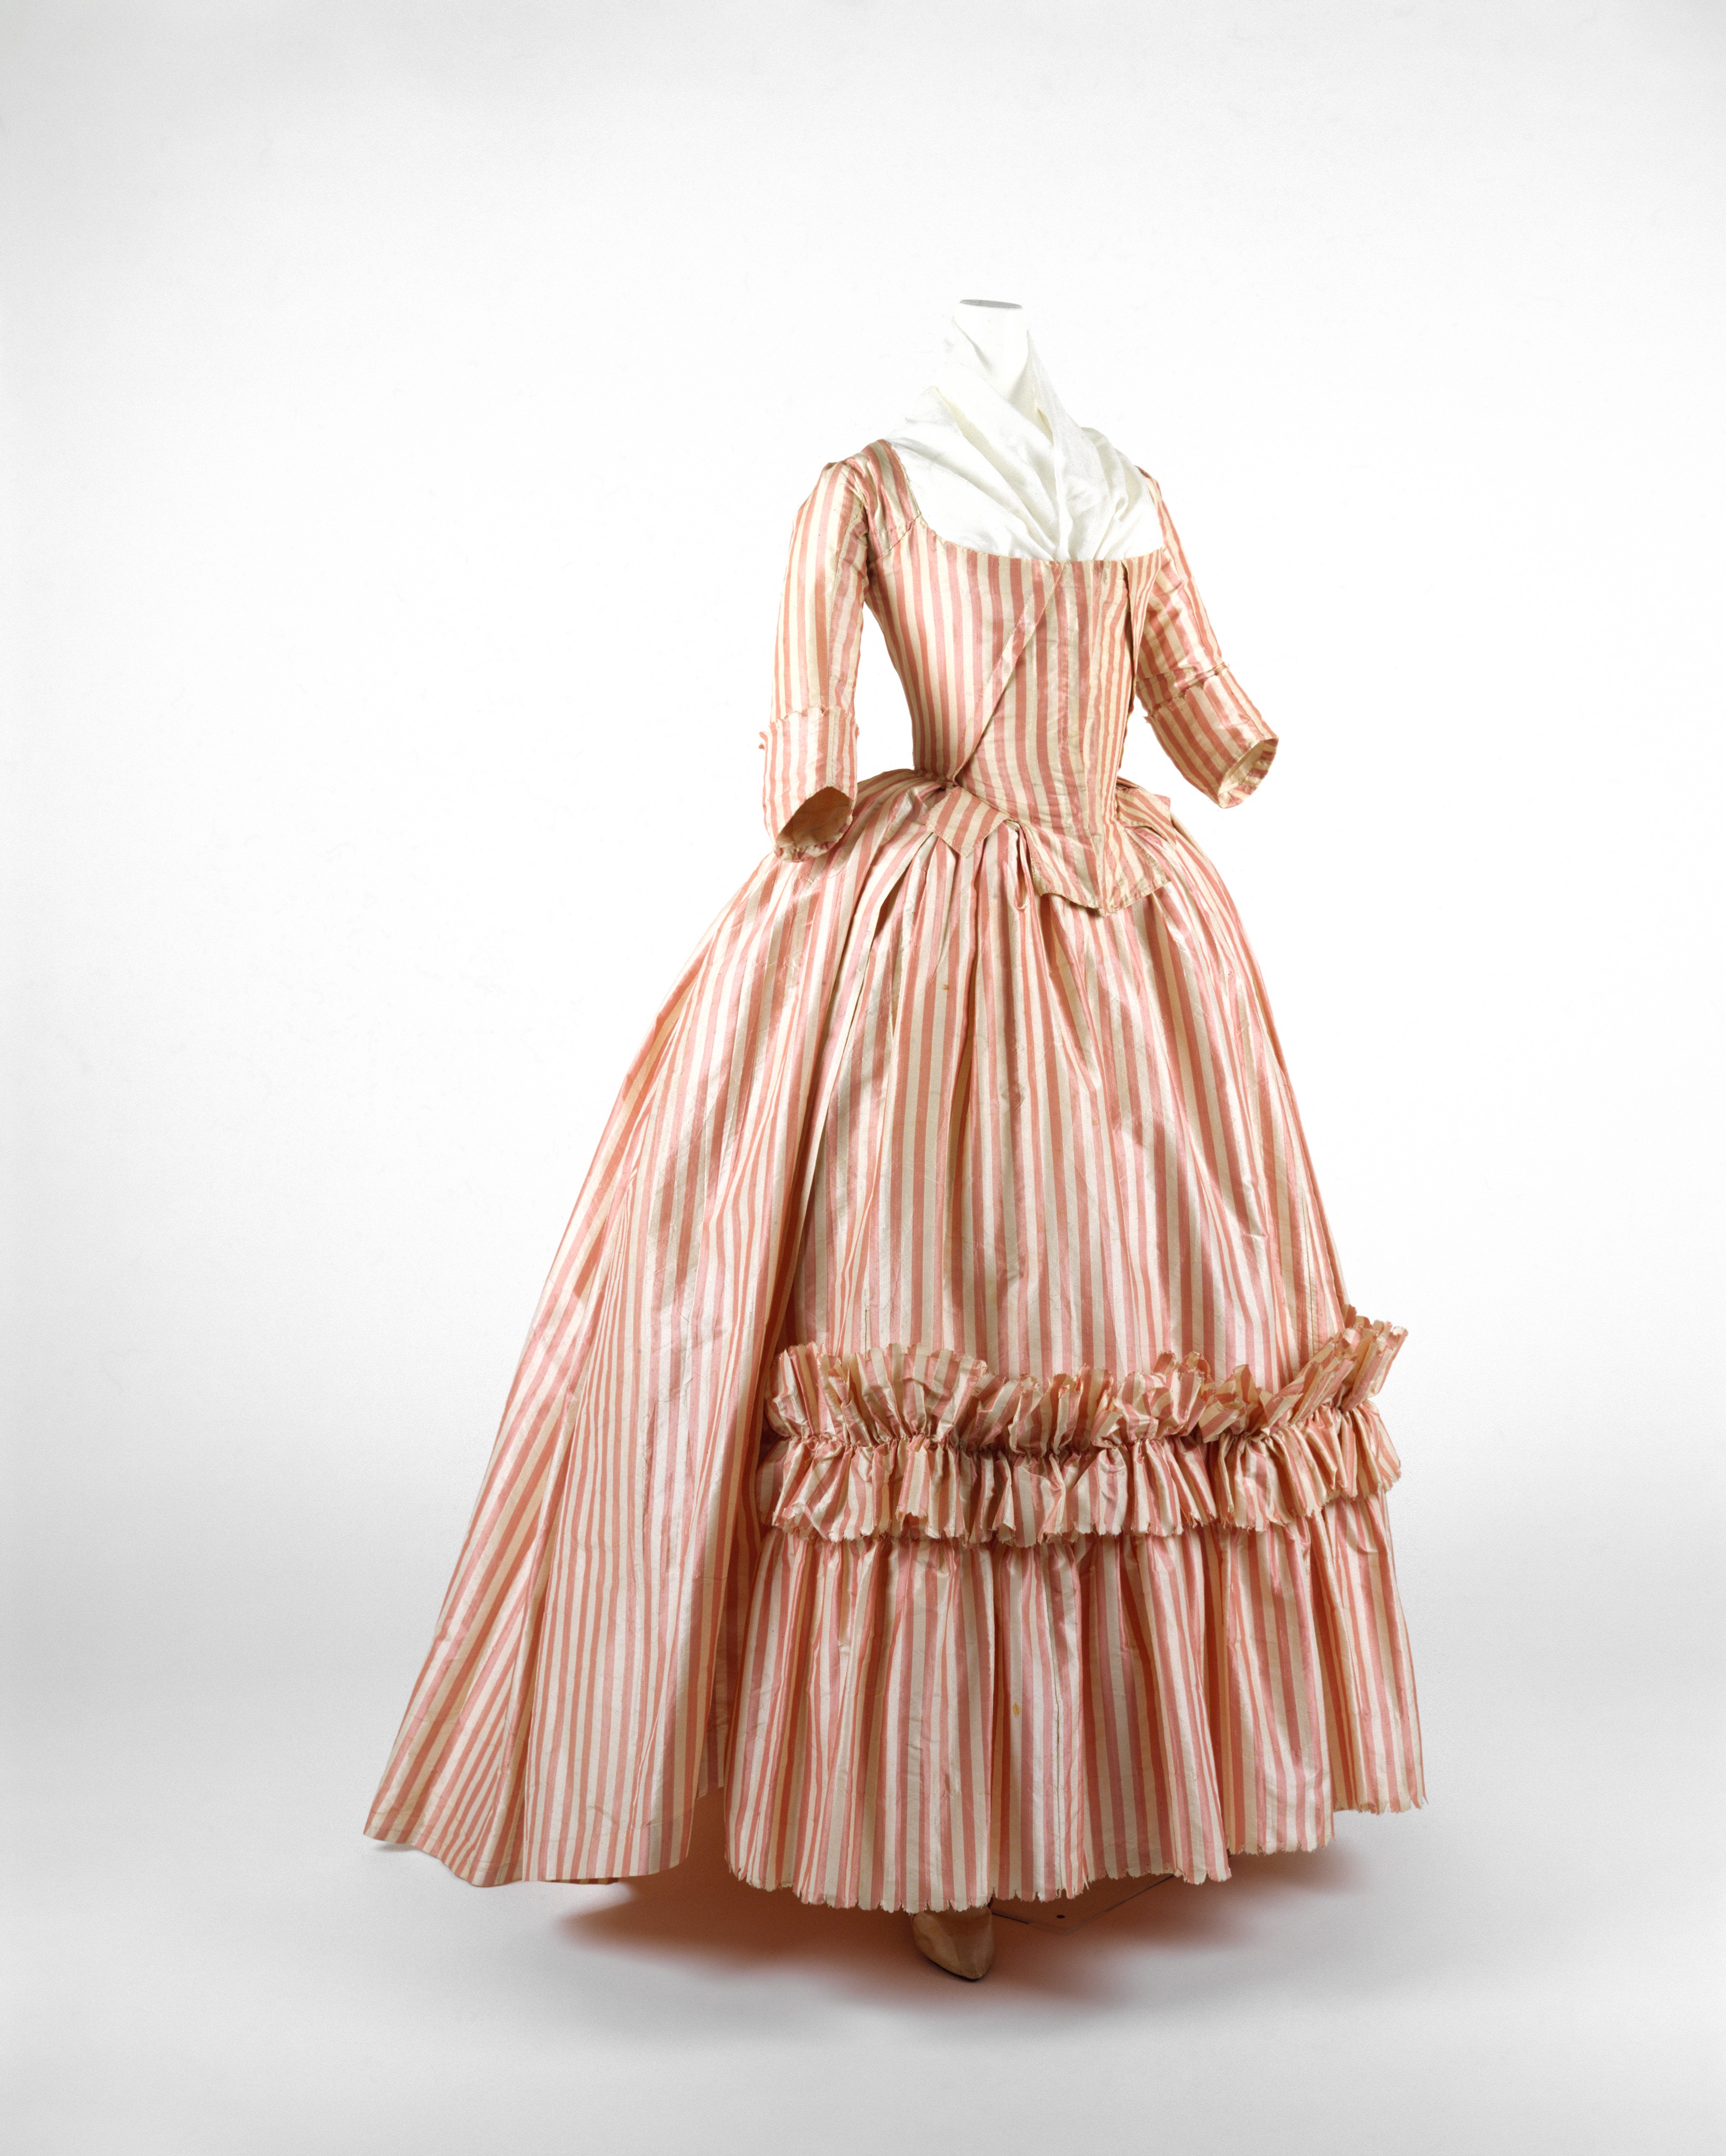 Мода 18-го века